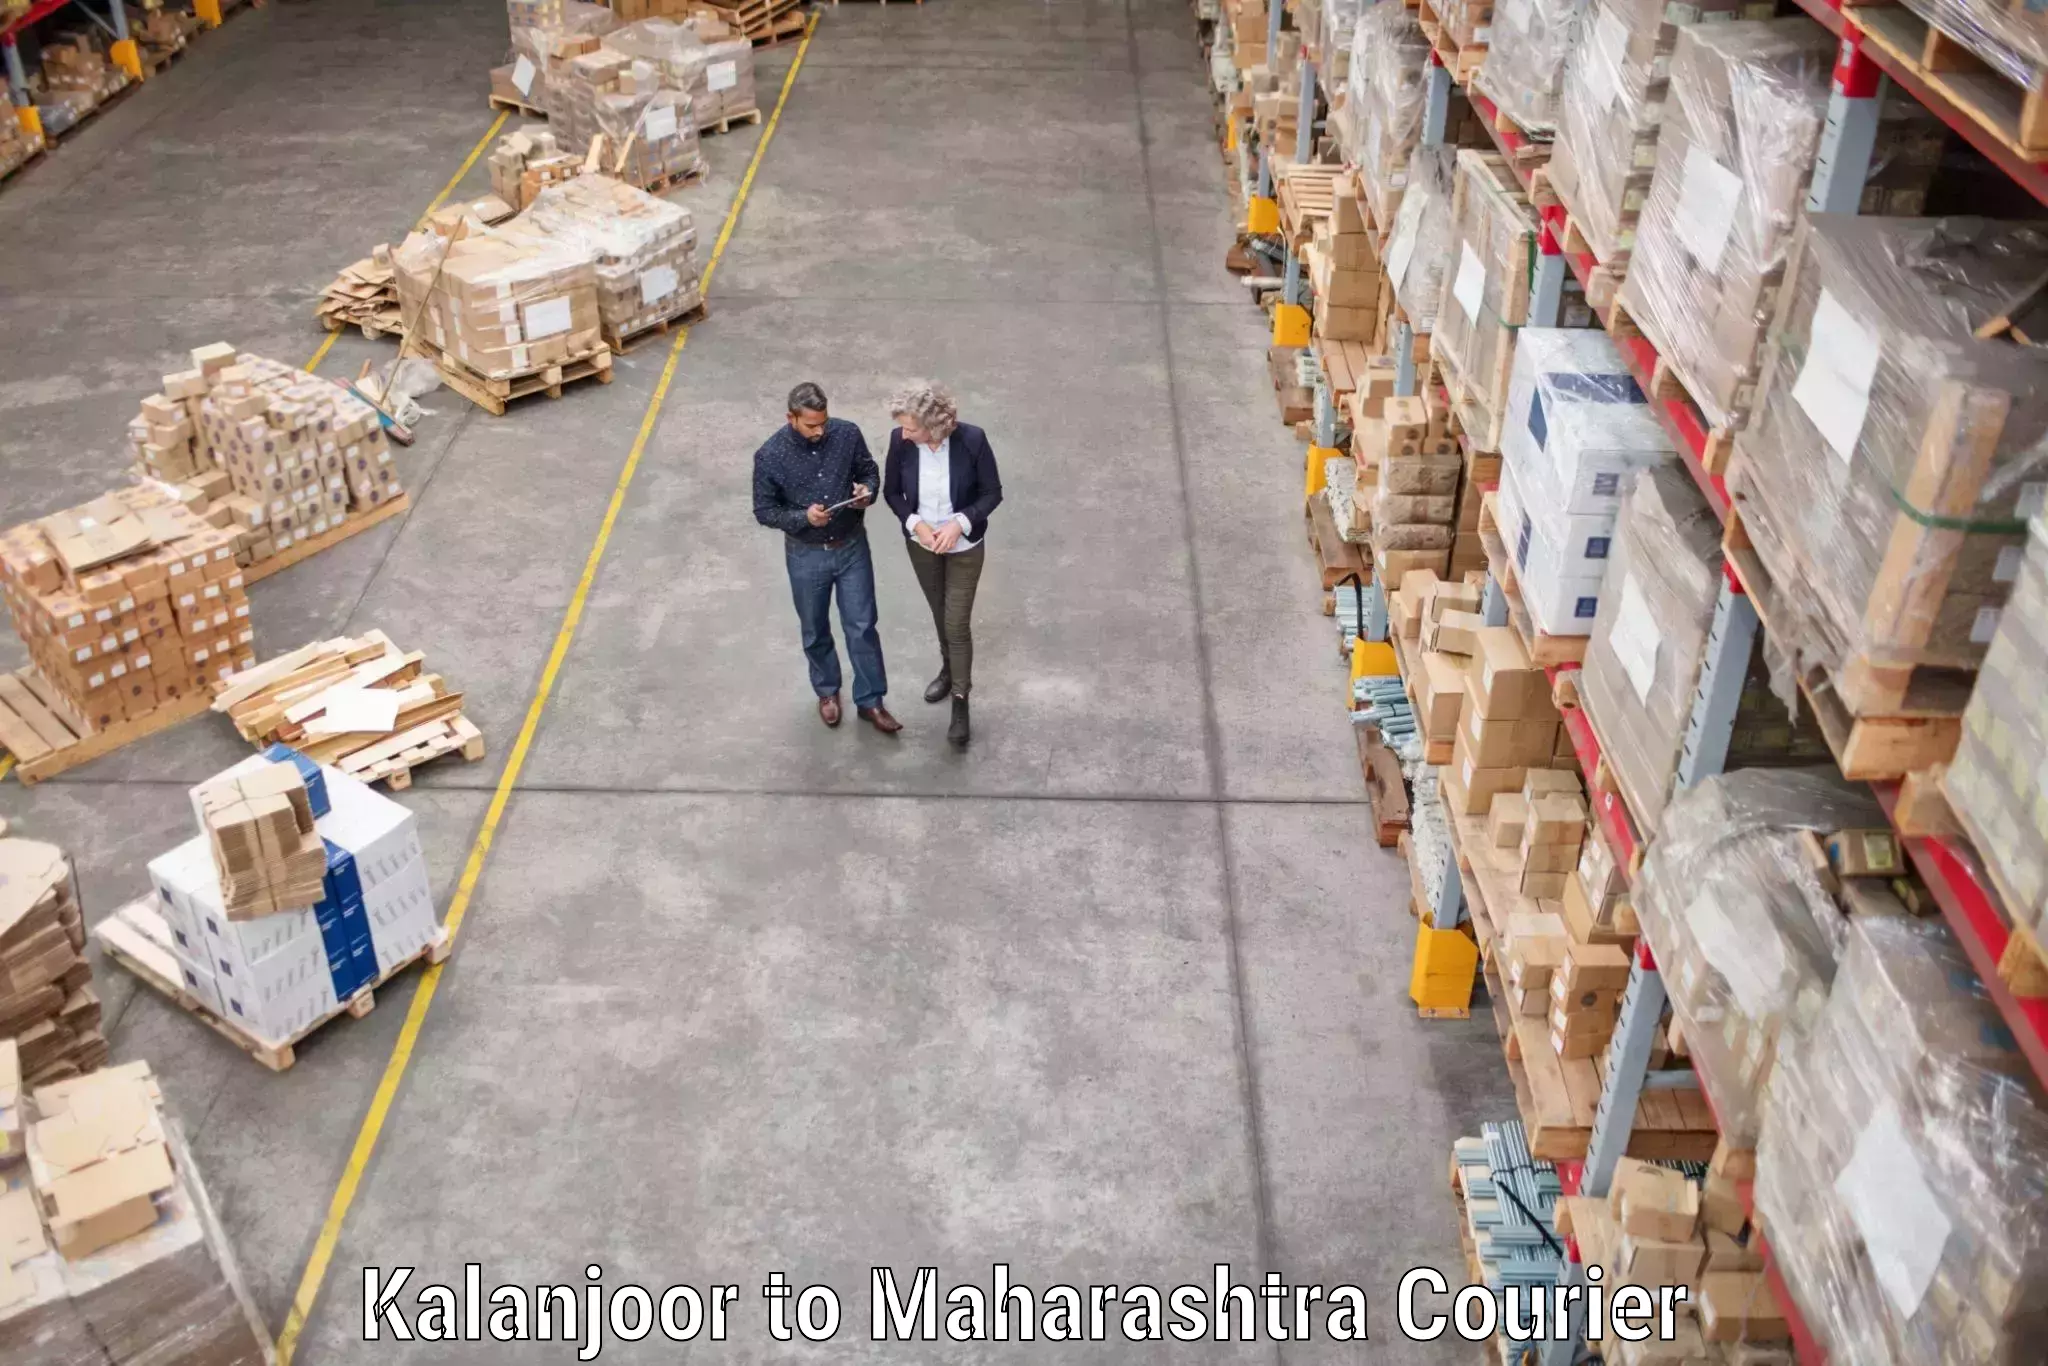 Full-service household moving Kalanjoor to Maharashtra